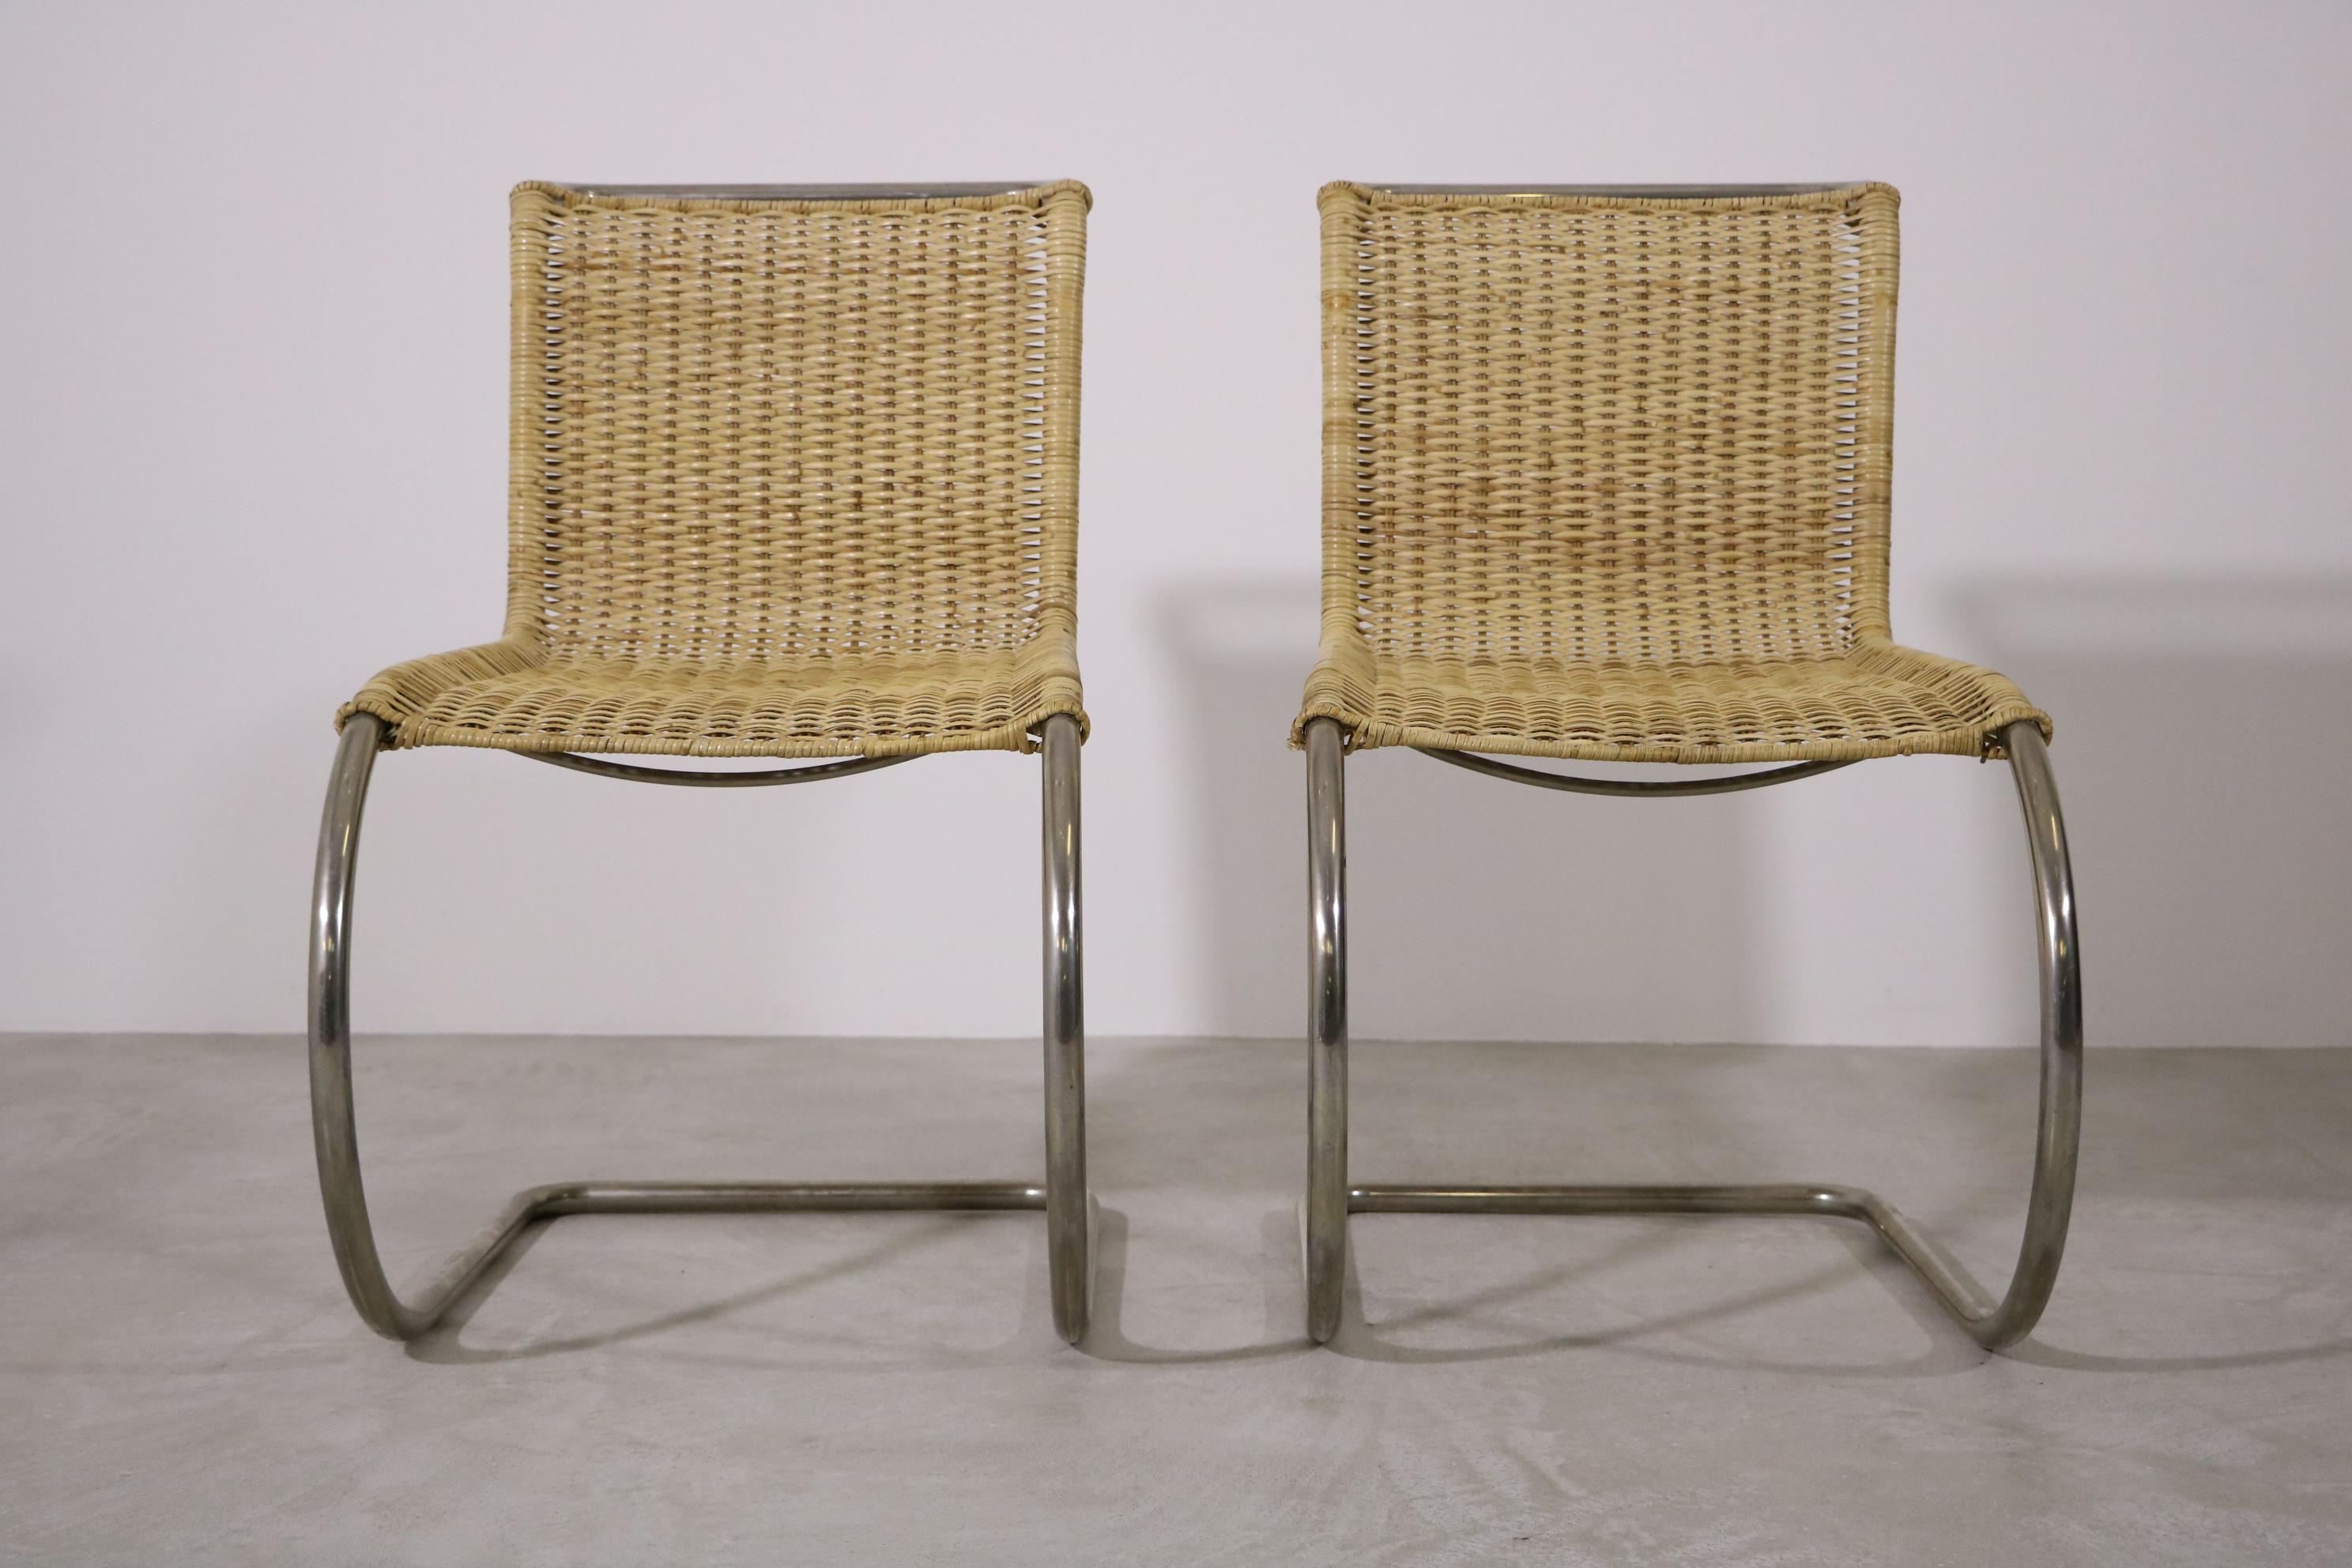 En bon état d'origine, avec des signes mineurs d'âge et d'utilisation, qui ont préservé une belle patine.

Ces deux chaises luge vintage ont été fabriquées par Tecta en Allemagne vers 1960.

Ludwig Mies van der Rohe a conçu le chef-d'œuvre B42